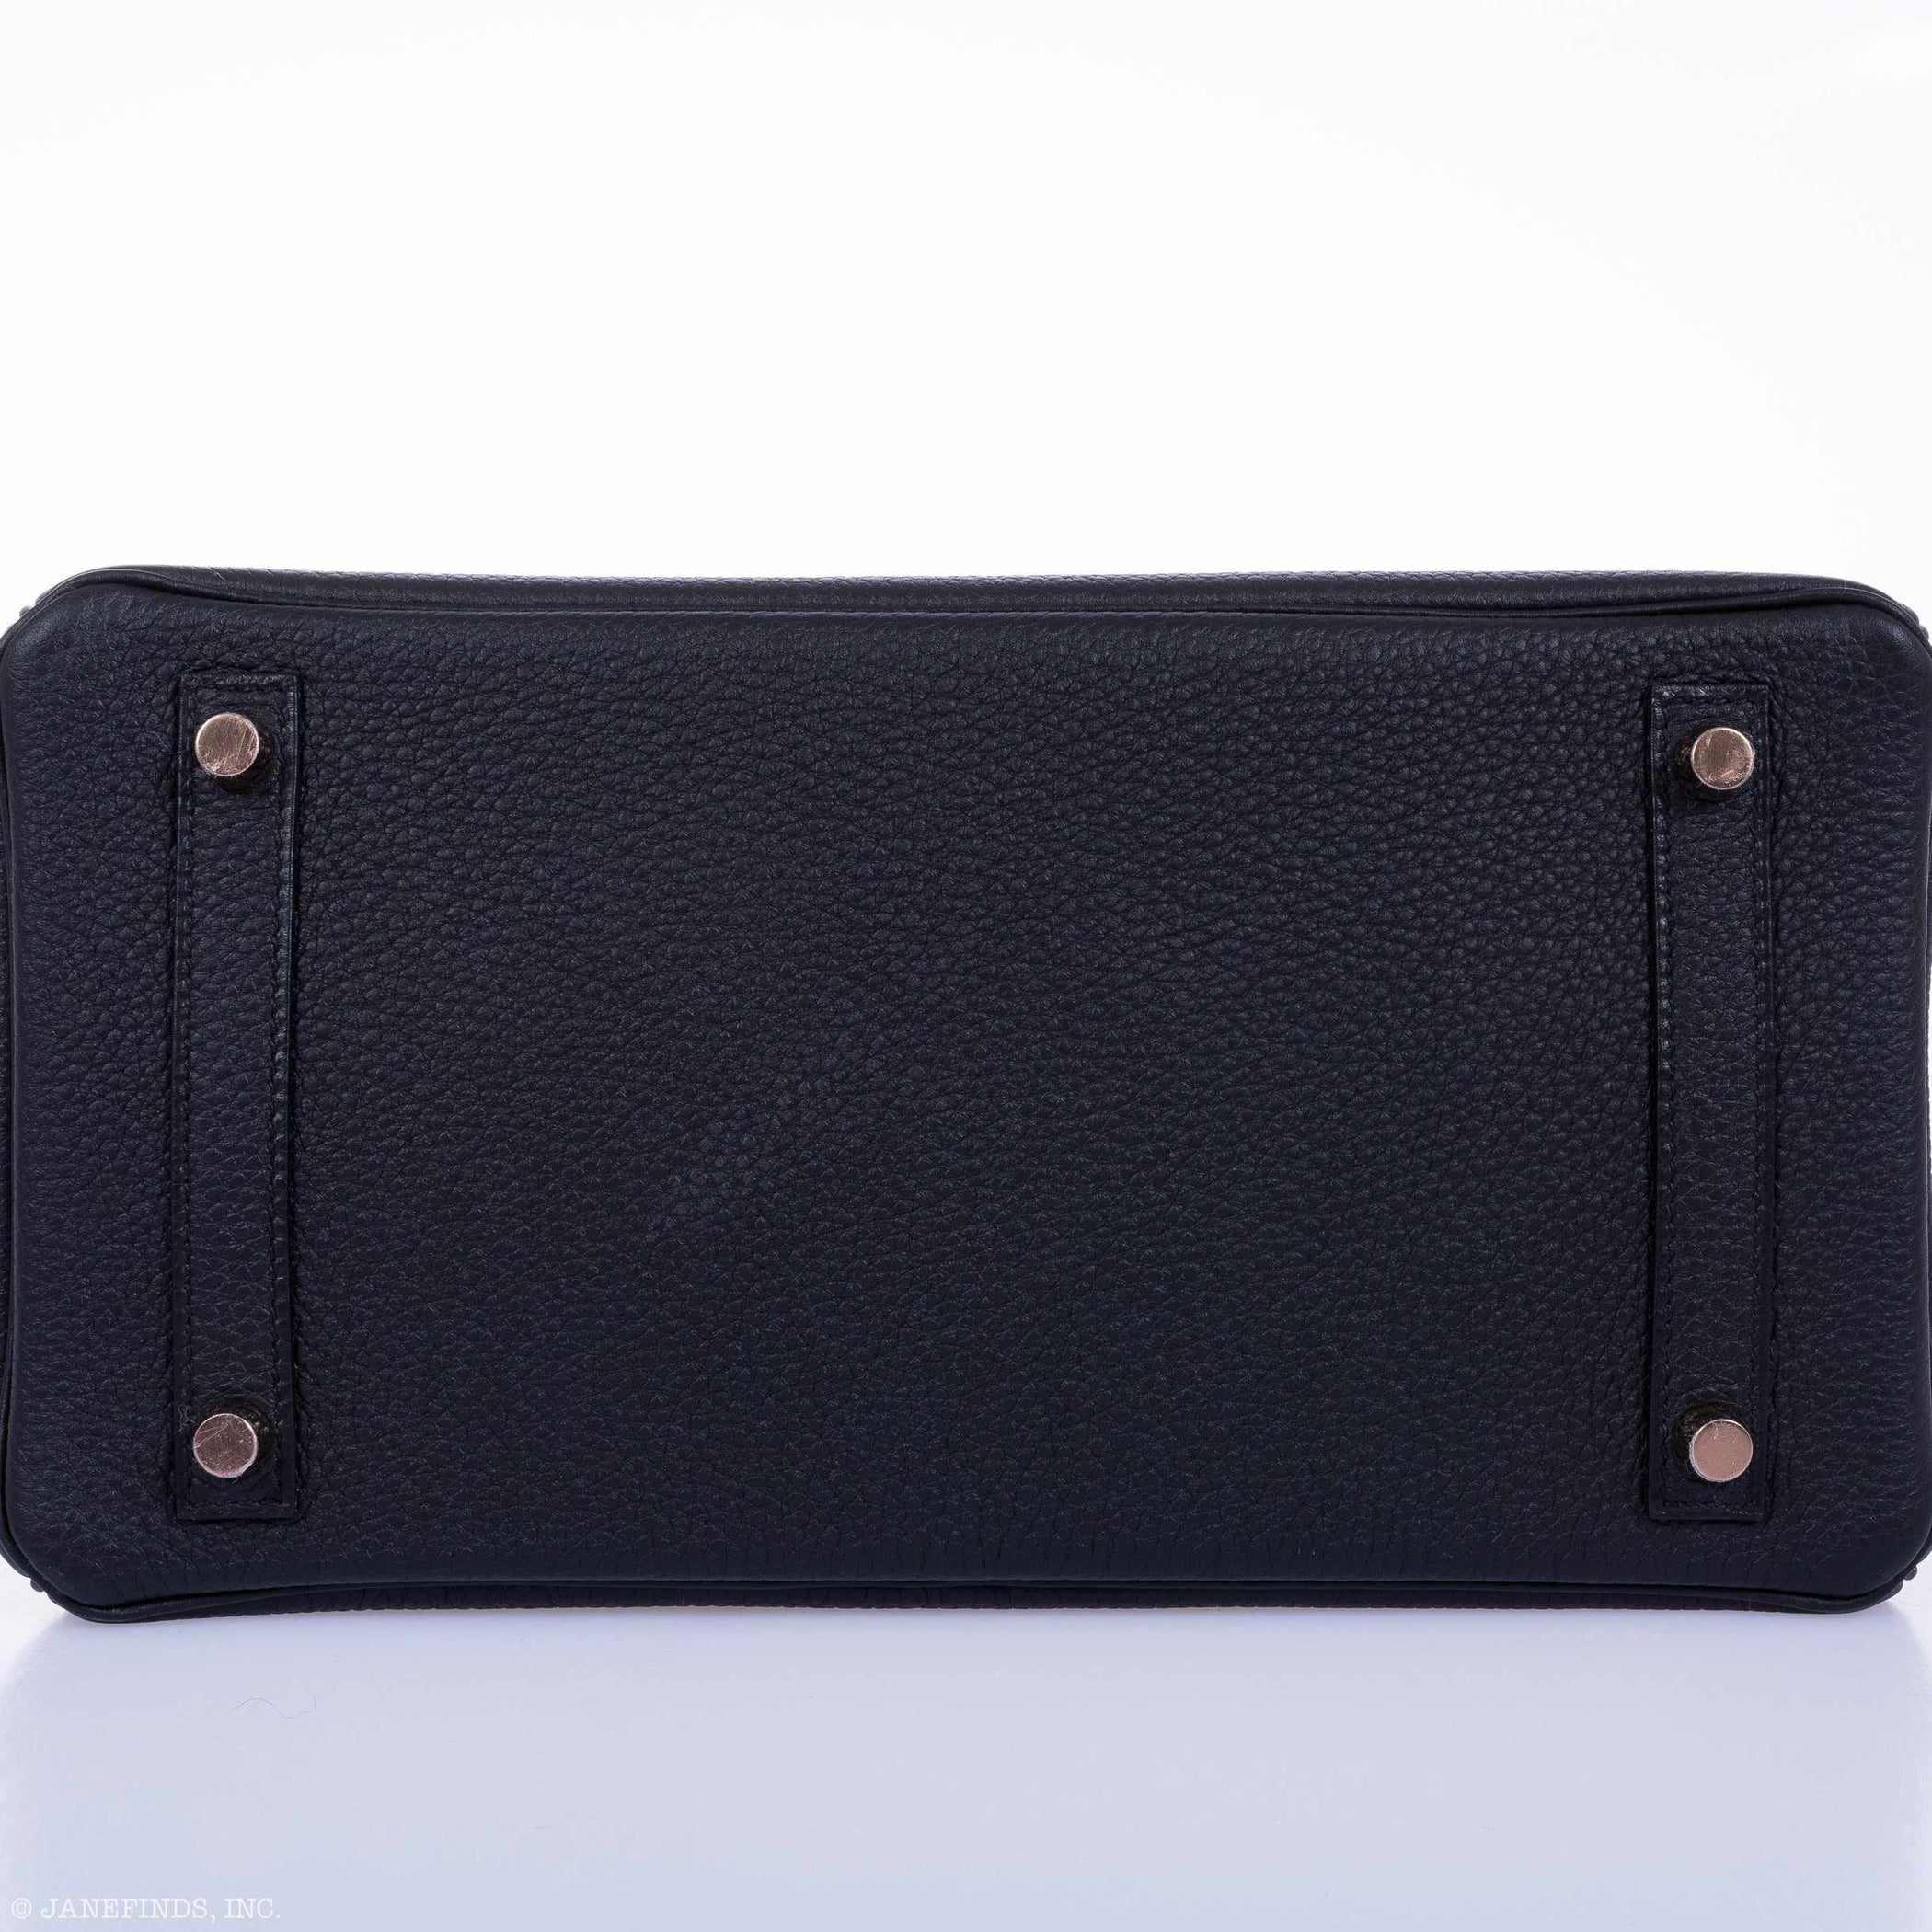 Hermes Rare Black Togo Leather 30cm Birkin Bag with Rose Gold Hardware ...